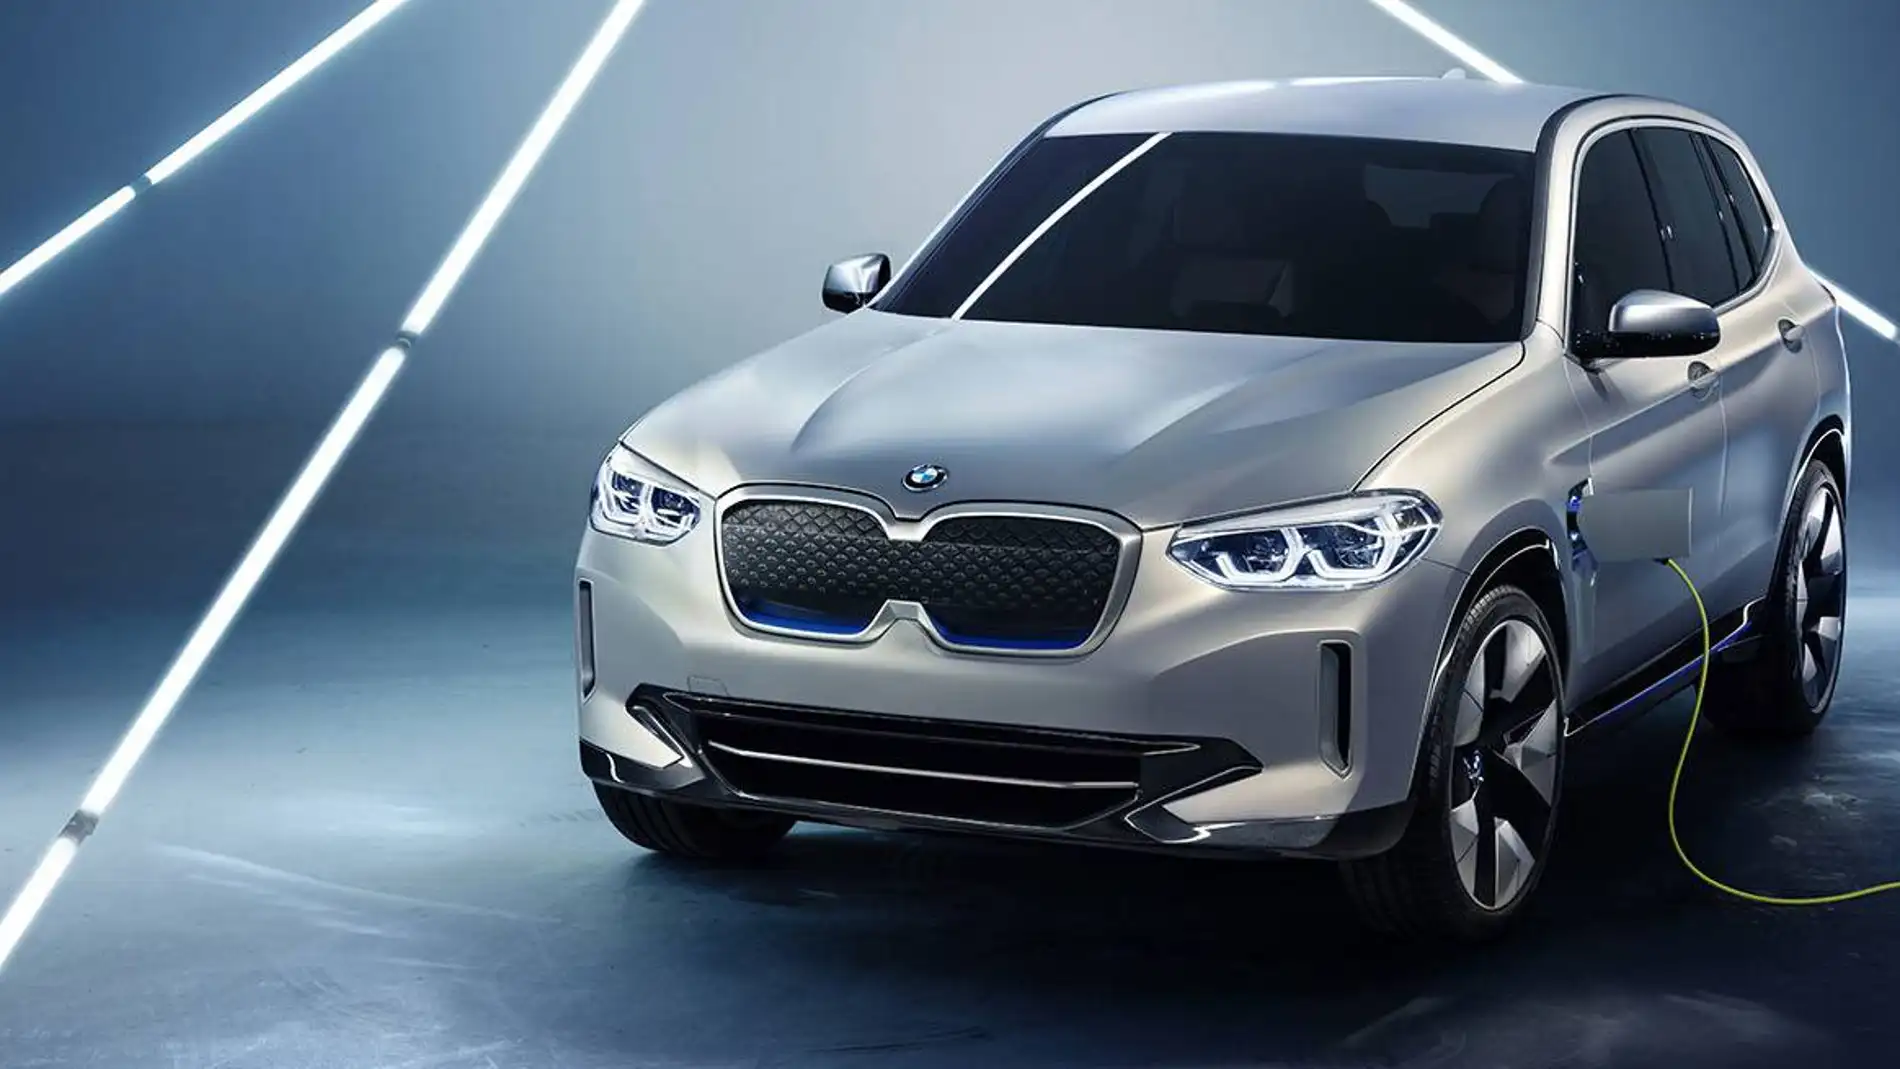 BMW iX3: prototipo, SUV y 100% eléctrico